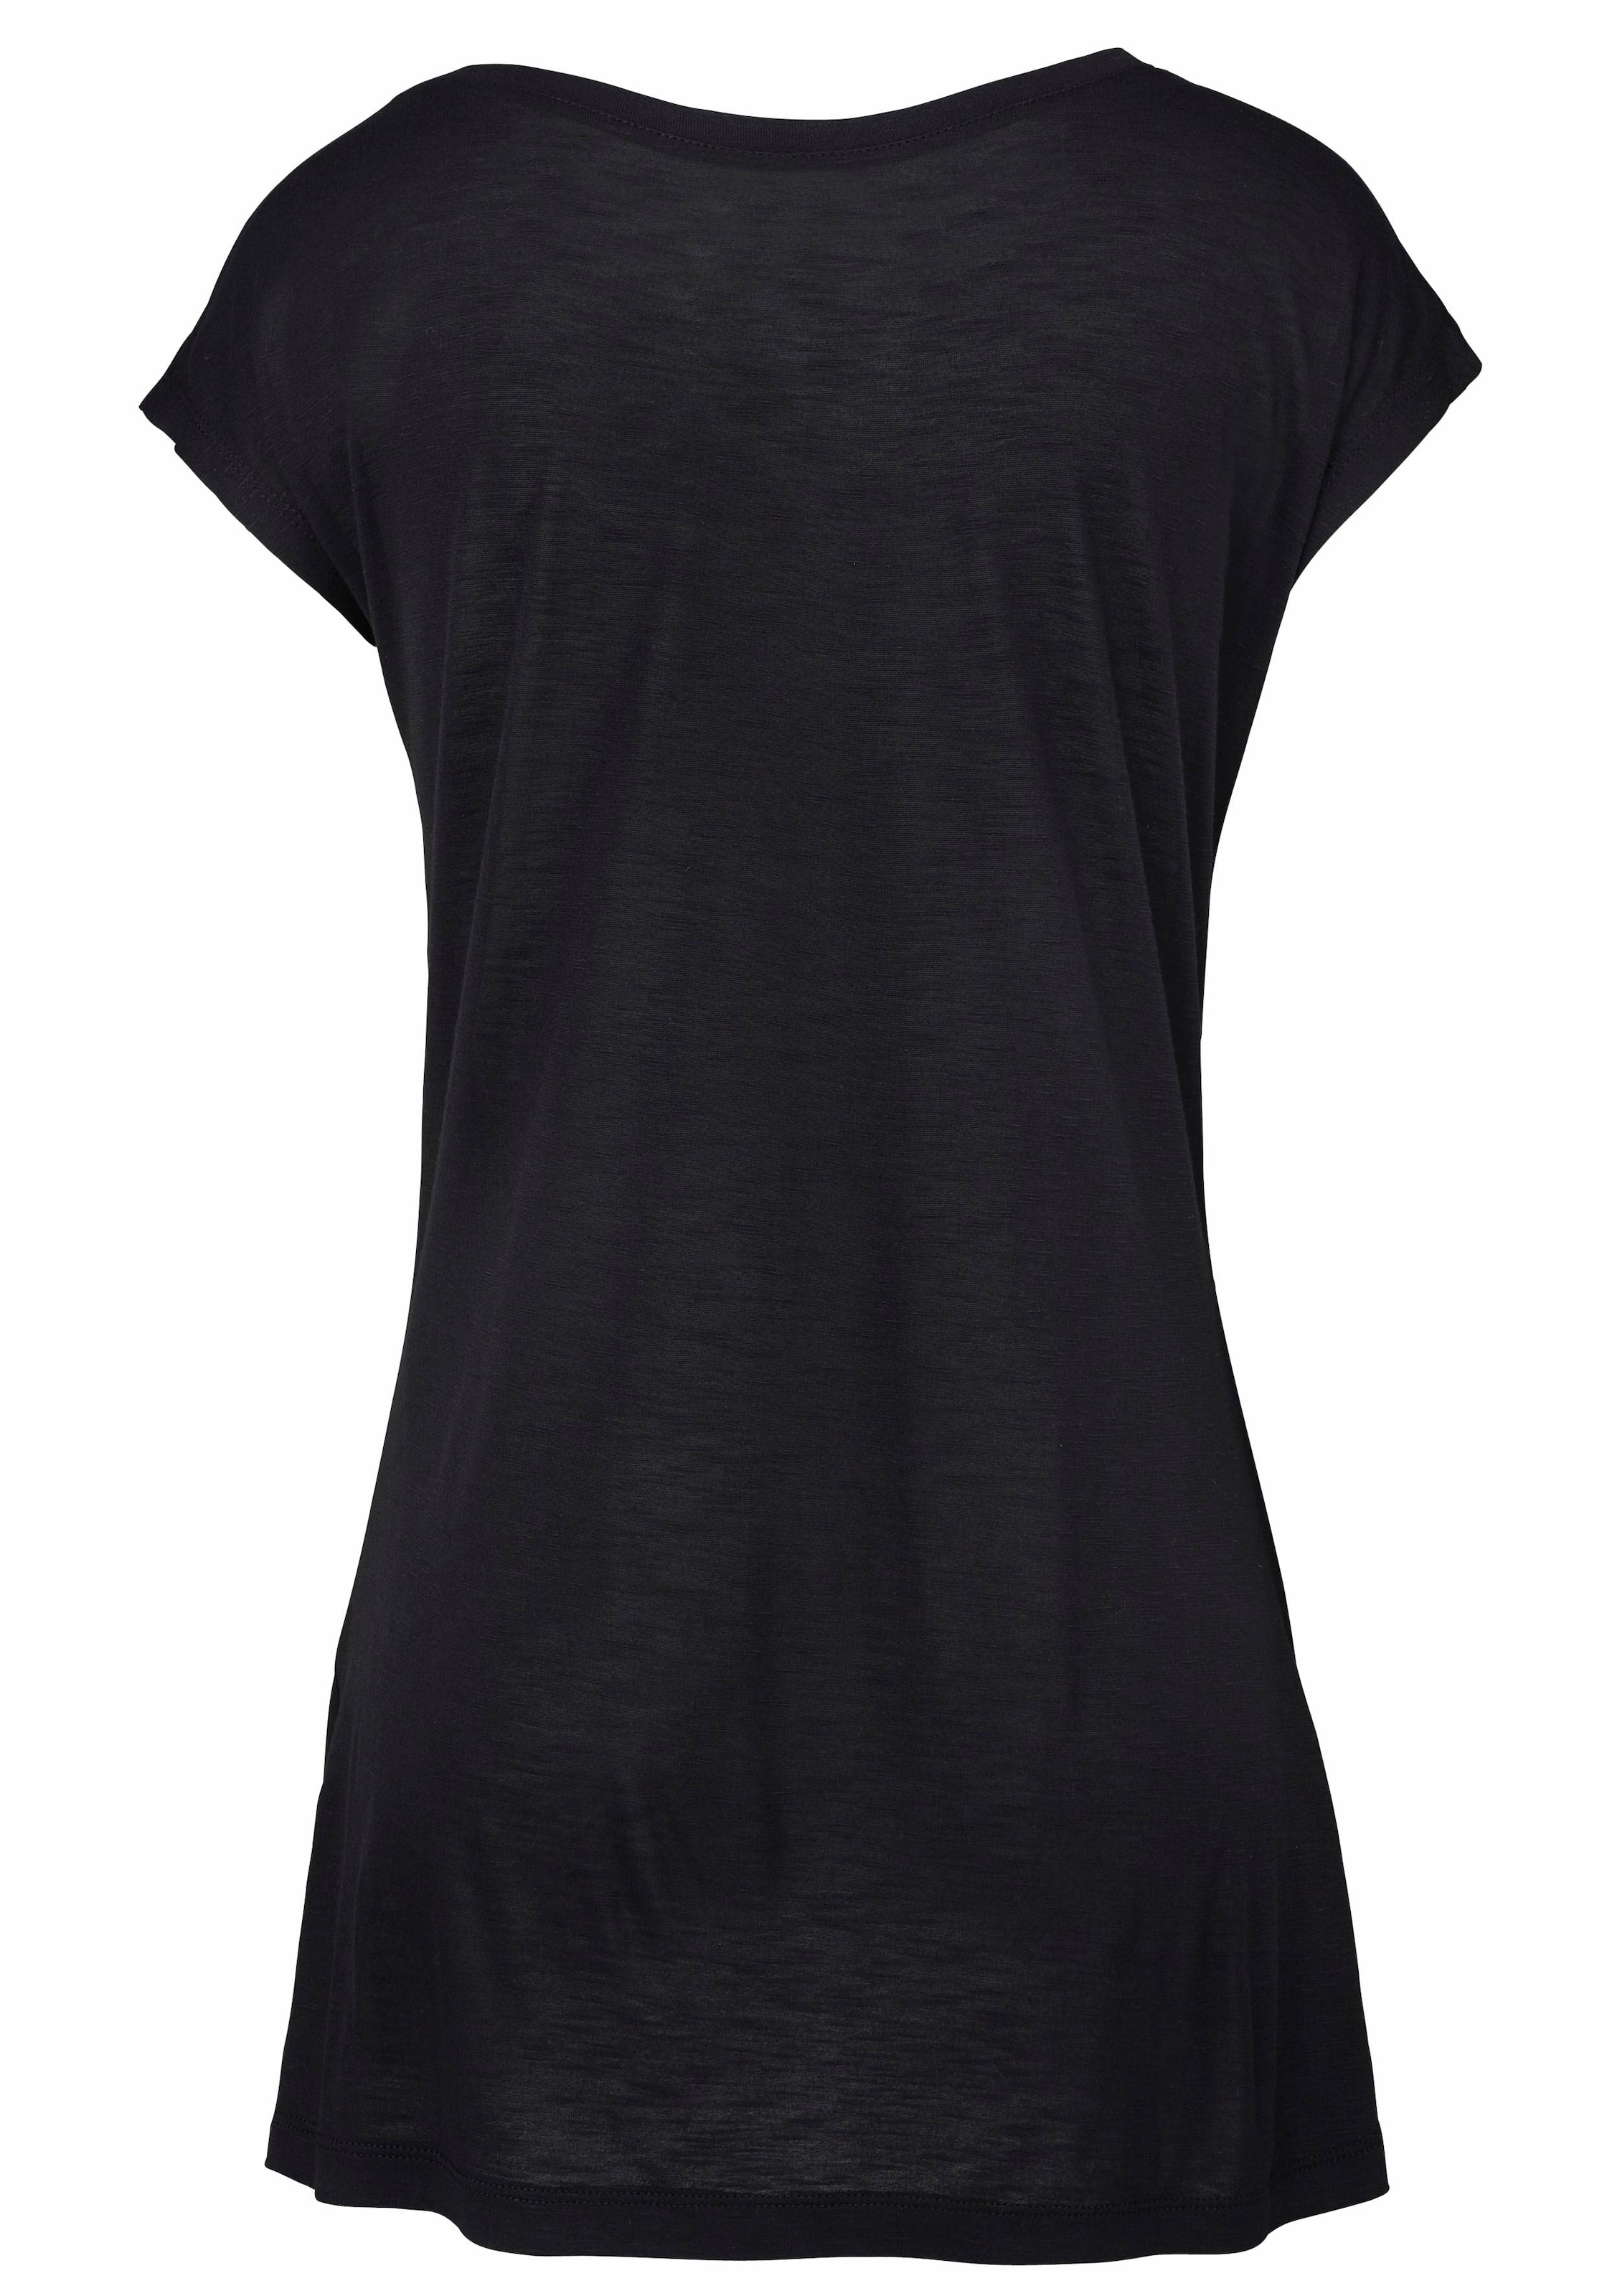 LASCANA Strandshirt, mit Print und glänzendem Effekt, Ethno-Look, casual